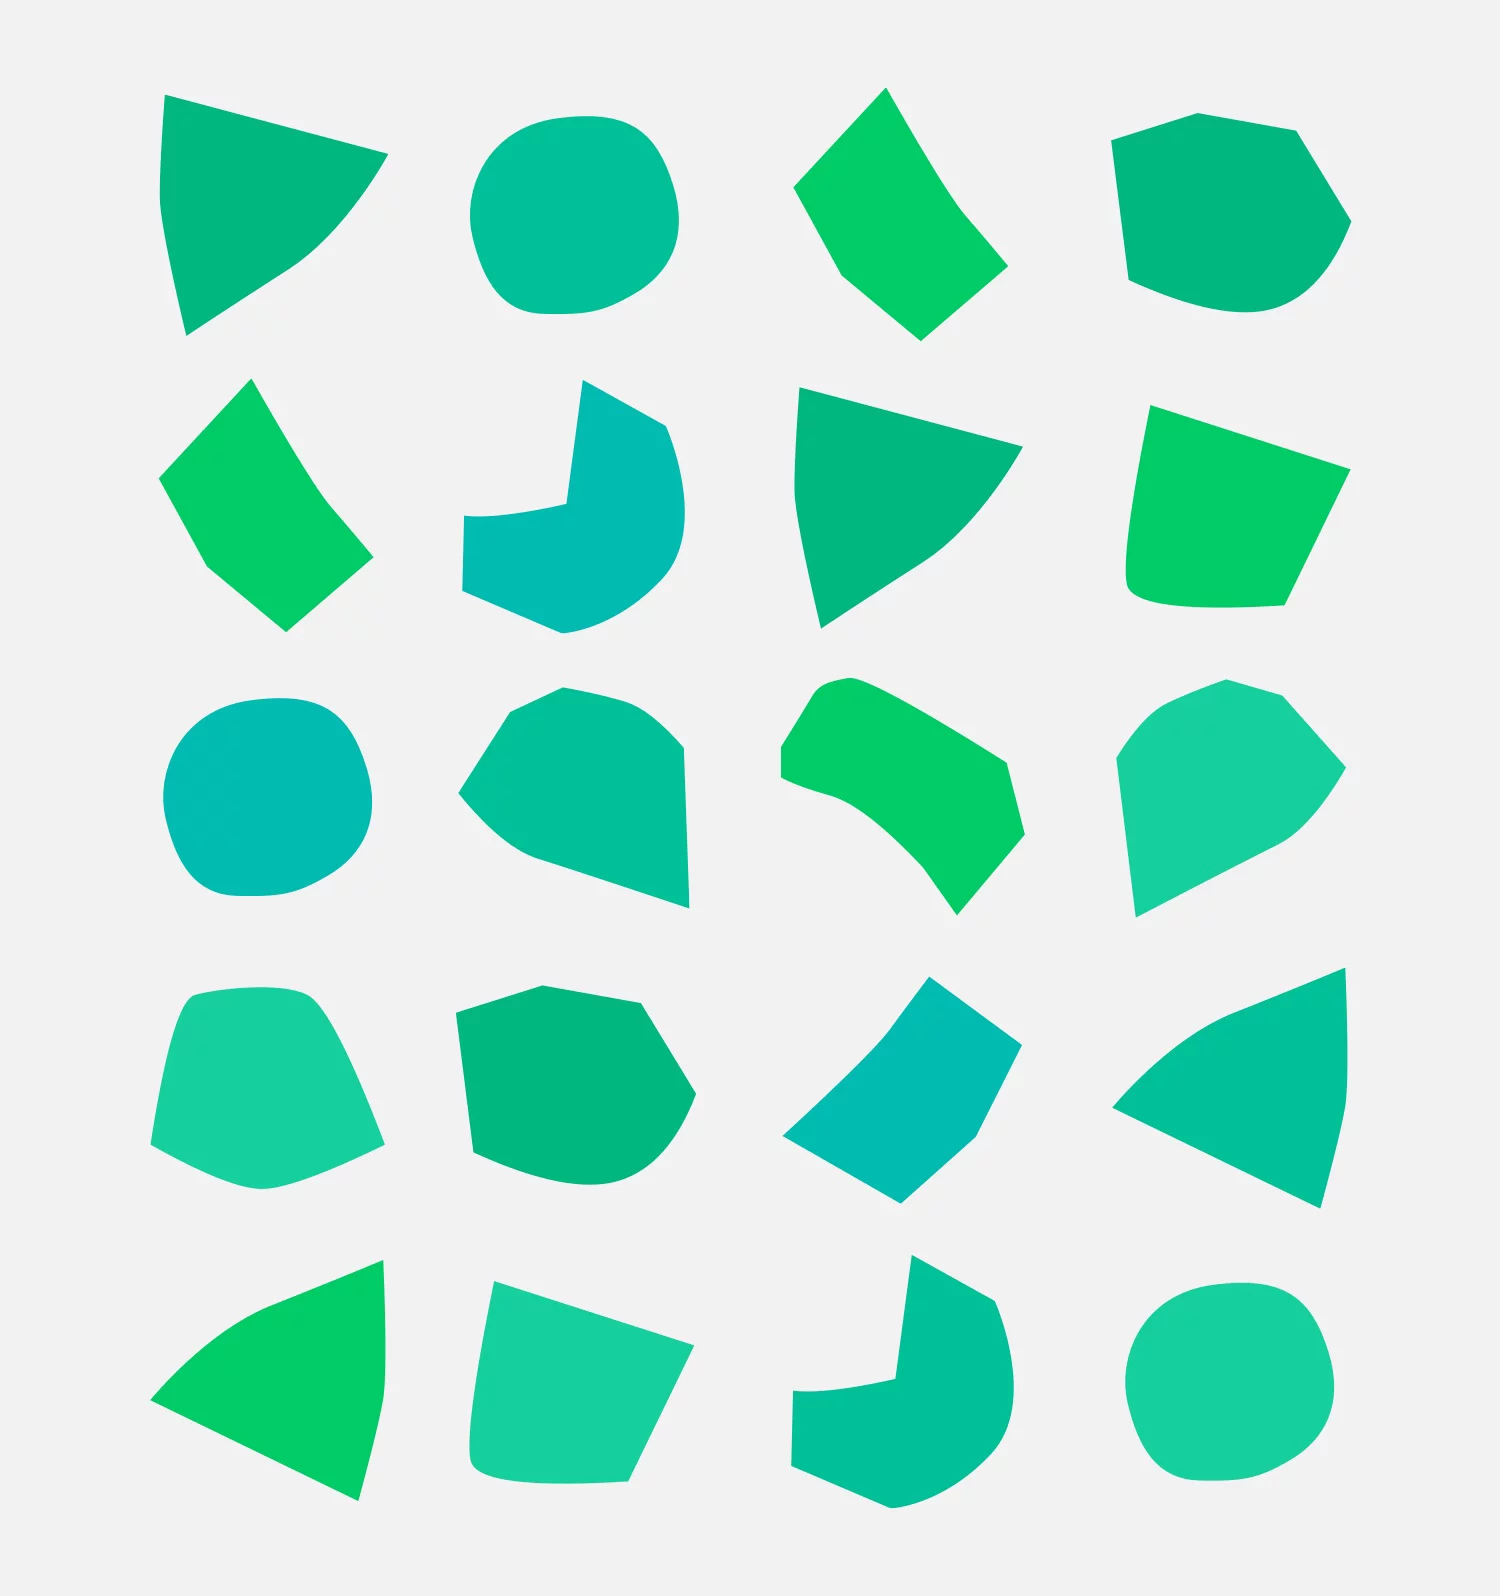 Formes graphiques abstraites avec différentes teintes de vert